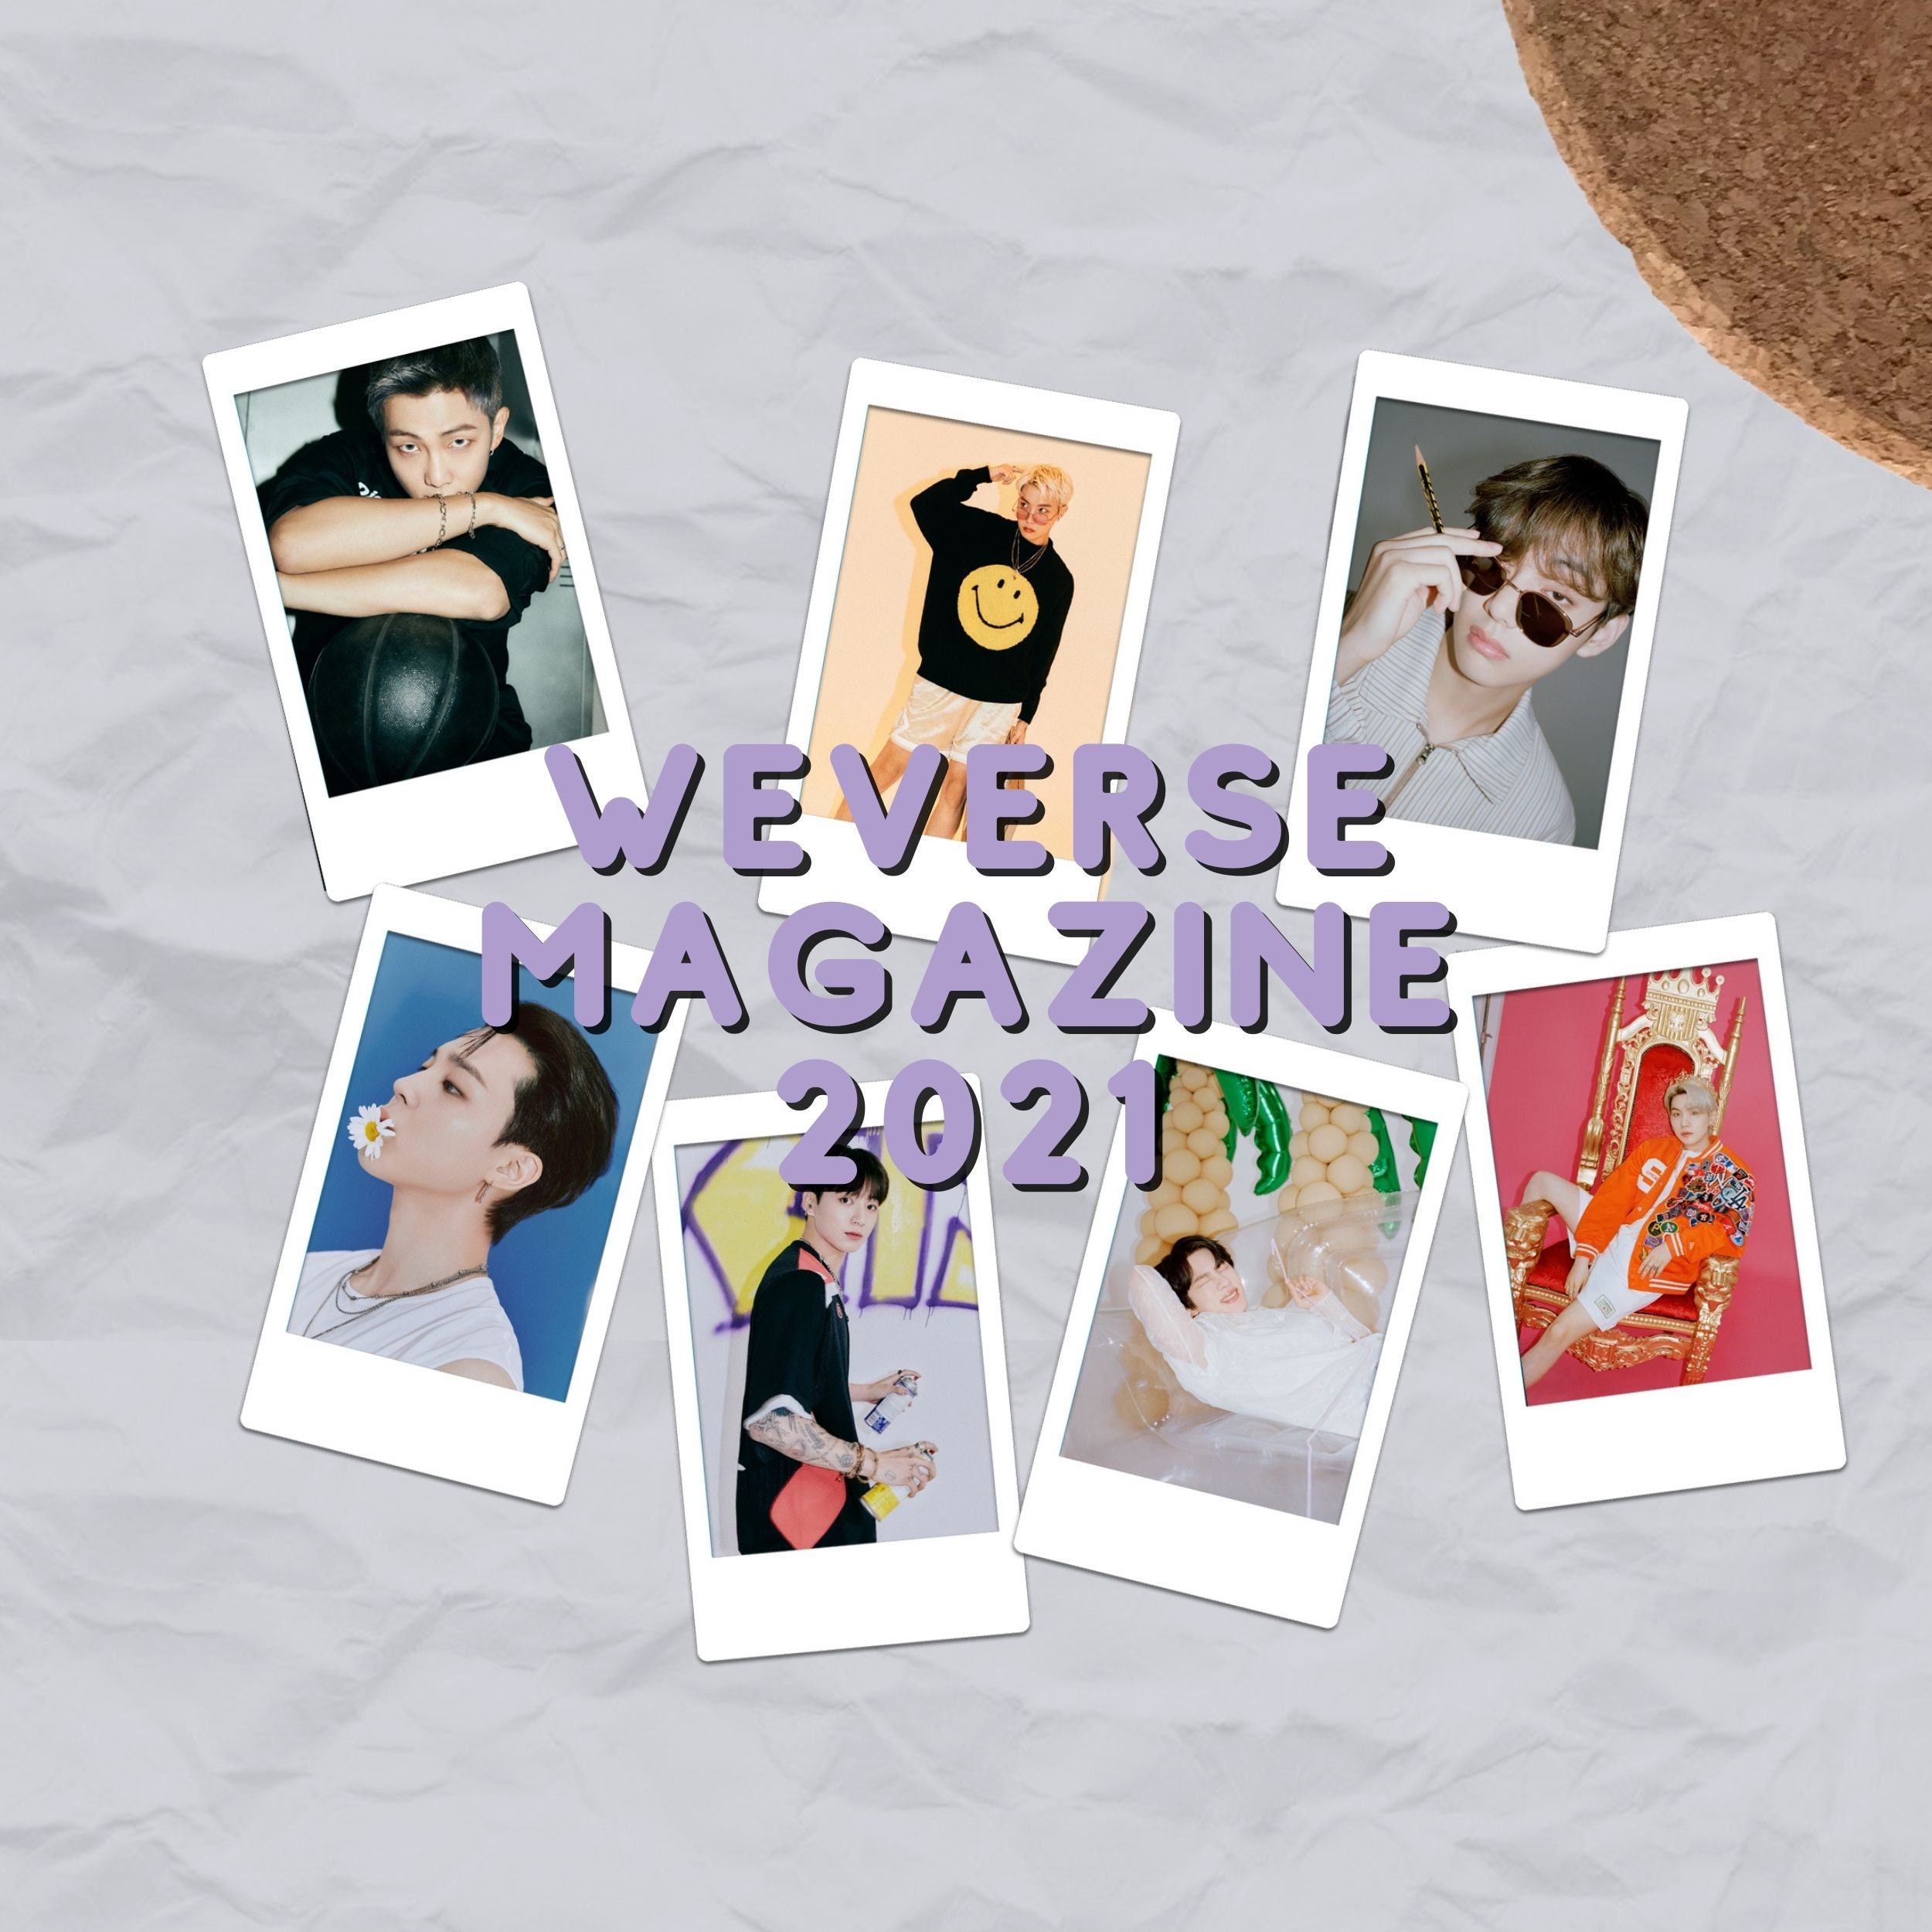 BTS's J-HOPE For weverse Magazine Photoshoot - Kpopmap